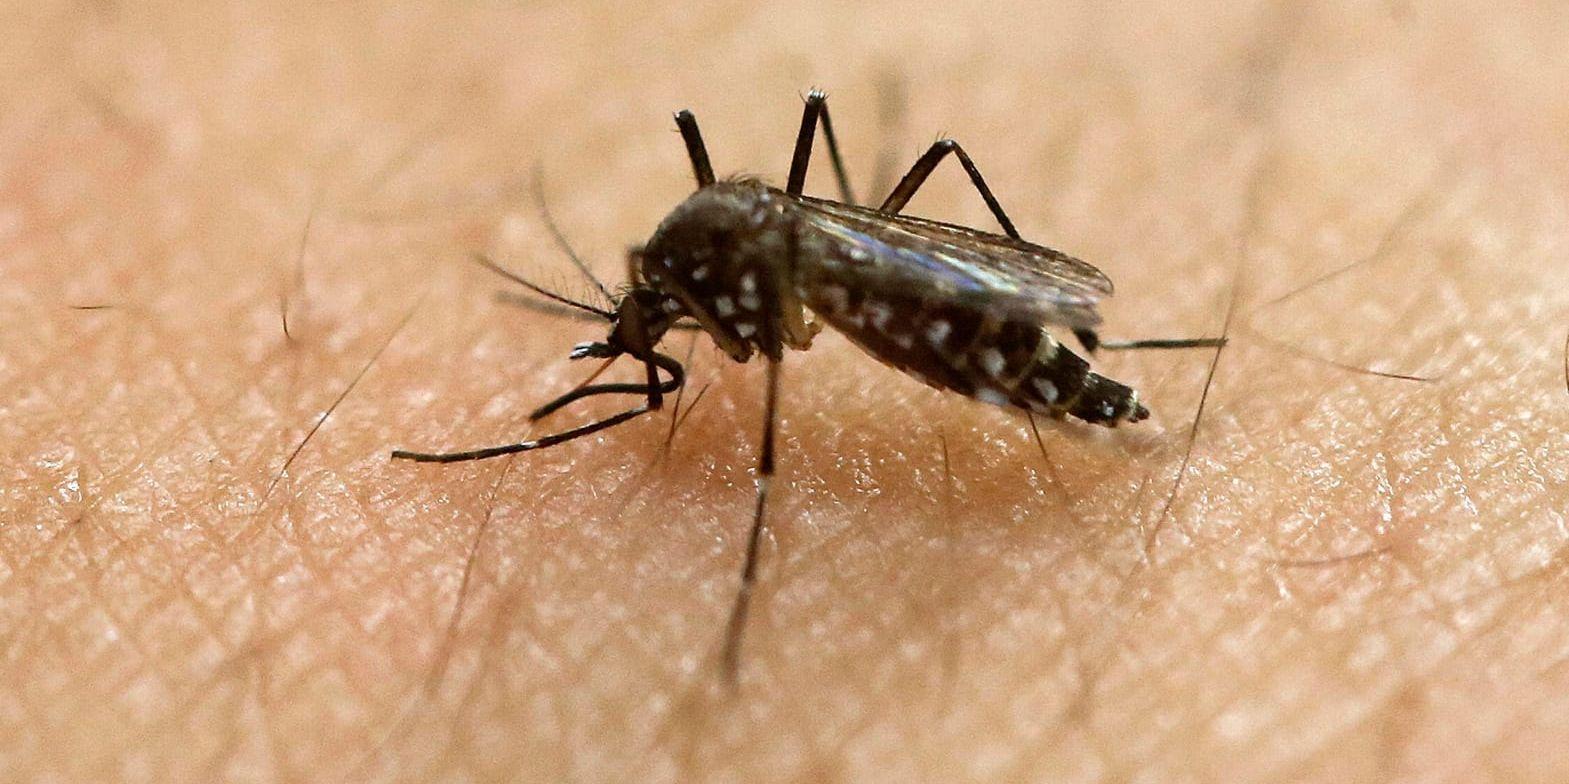 Zikavirus sprids framför allt av myggor och i sällsynta fall genom sex. Nu har viruset i hittats levande i sperman hos en man efter över tre månader. Arkivbild.